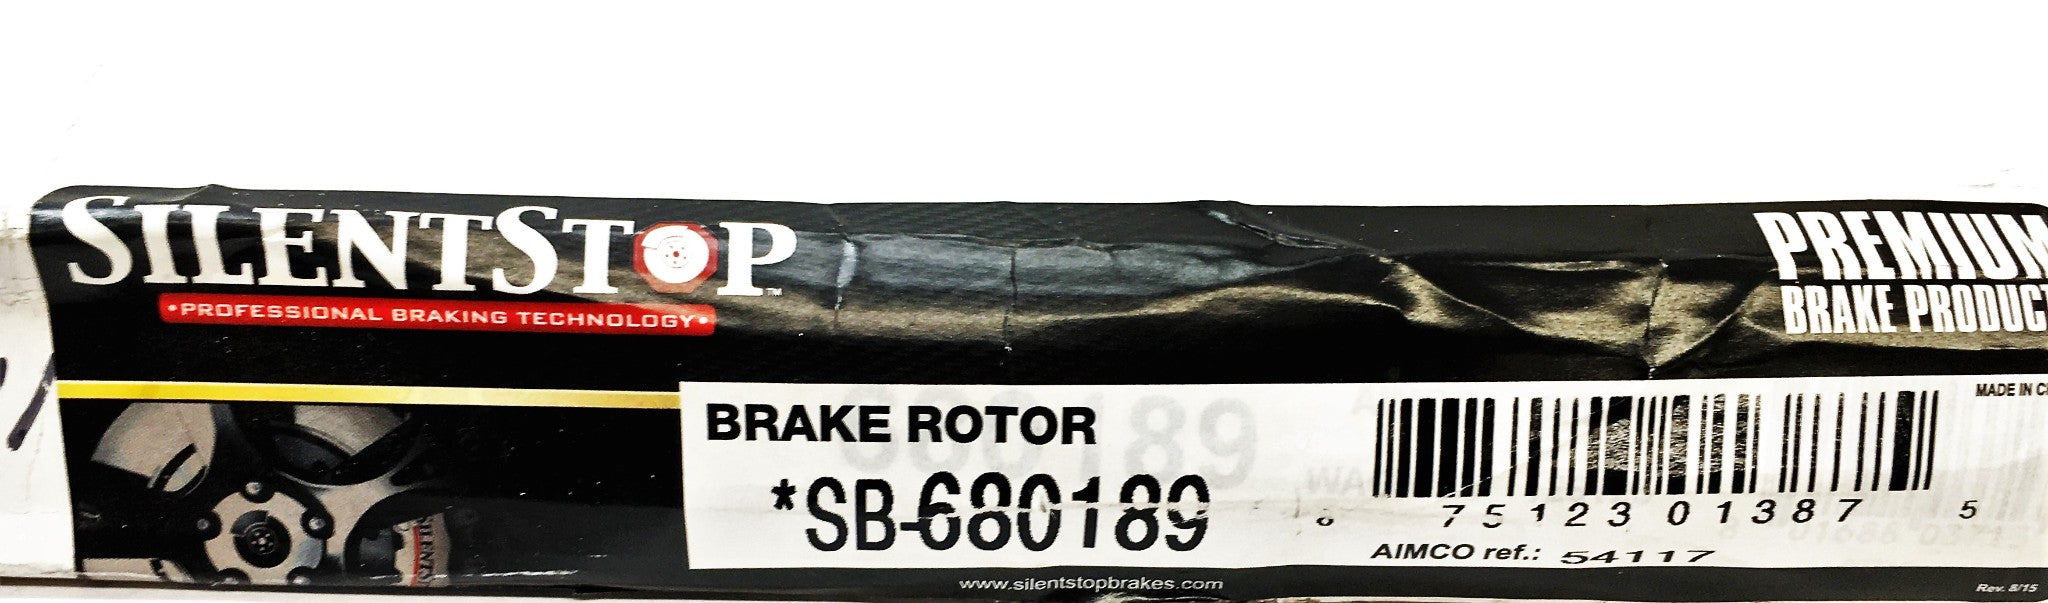 SilentStop Brake Rotor SB-680189 NOS